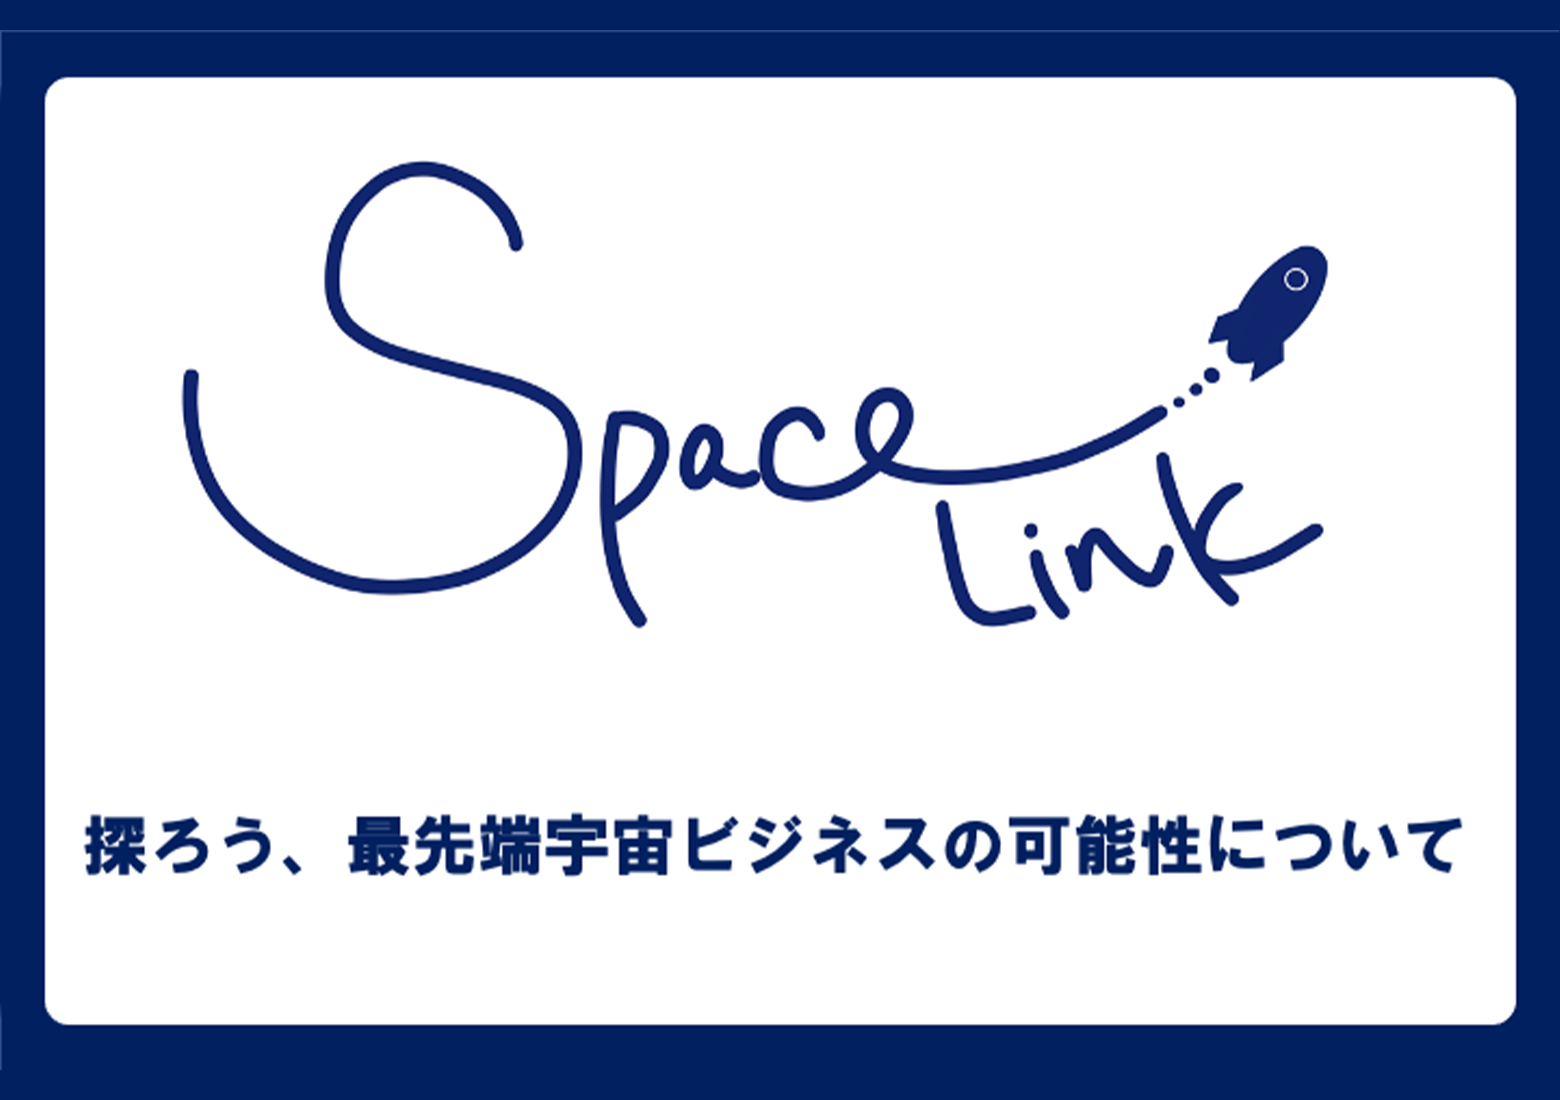 宇宙先端ビジネスを学べるオンラインサロン「SPACELINK」をローンチ